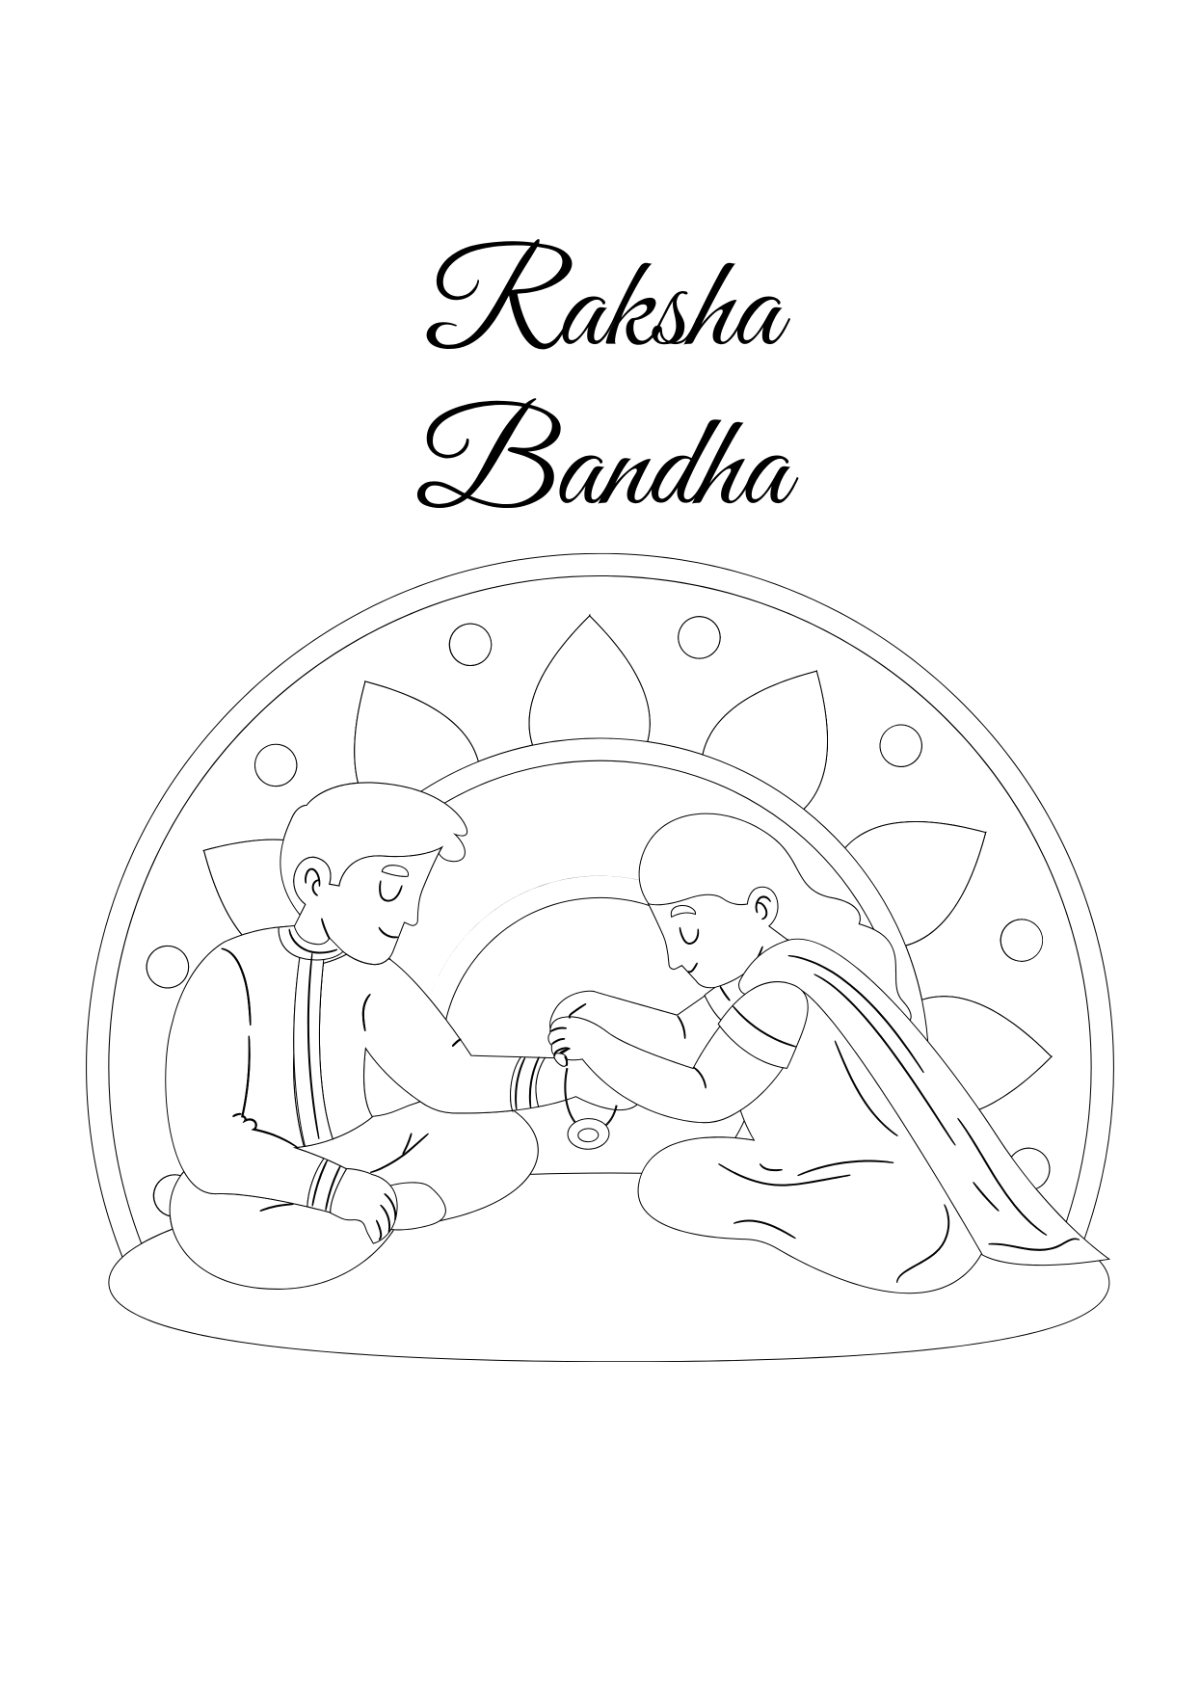 Raksha Bandhan Family Drawing